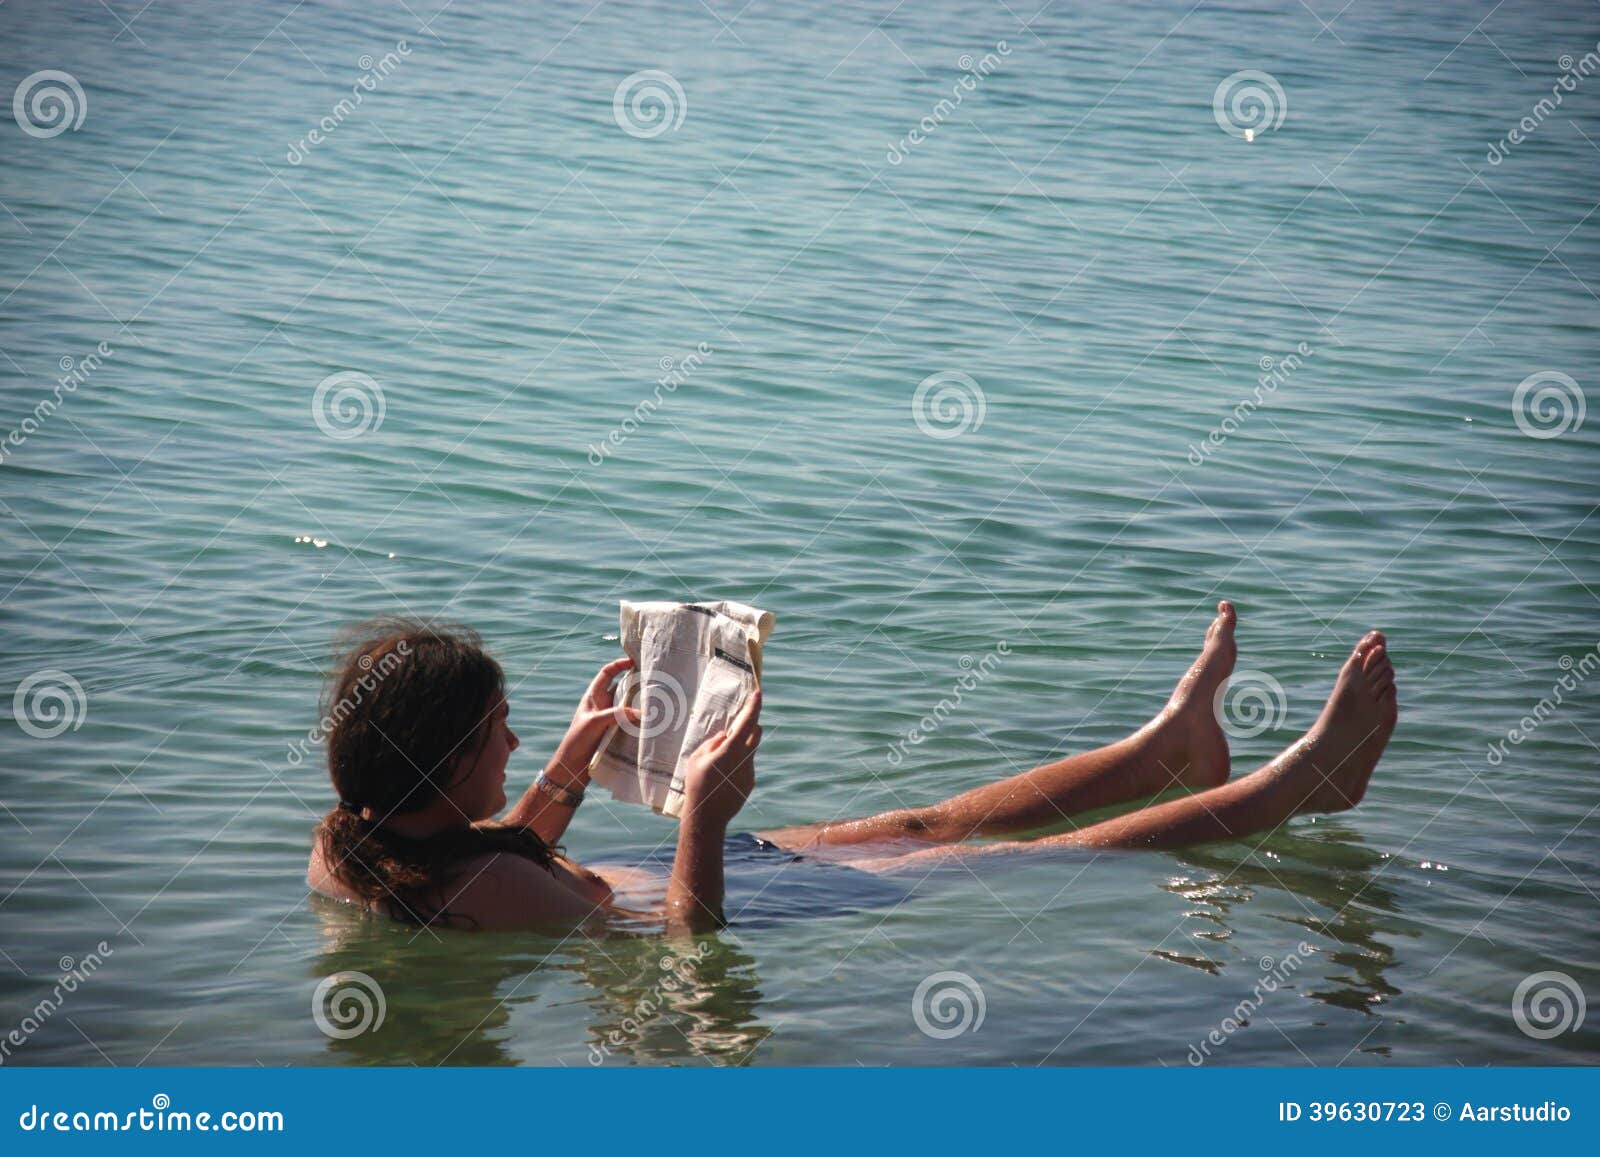 Мертвое море человек на воде. Мертвое море люди. Плавание в Мертвом море. Мертвое море чтение газеты. Мертвое море человек тонет.